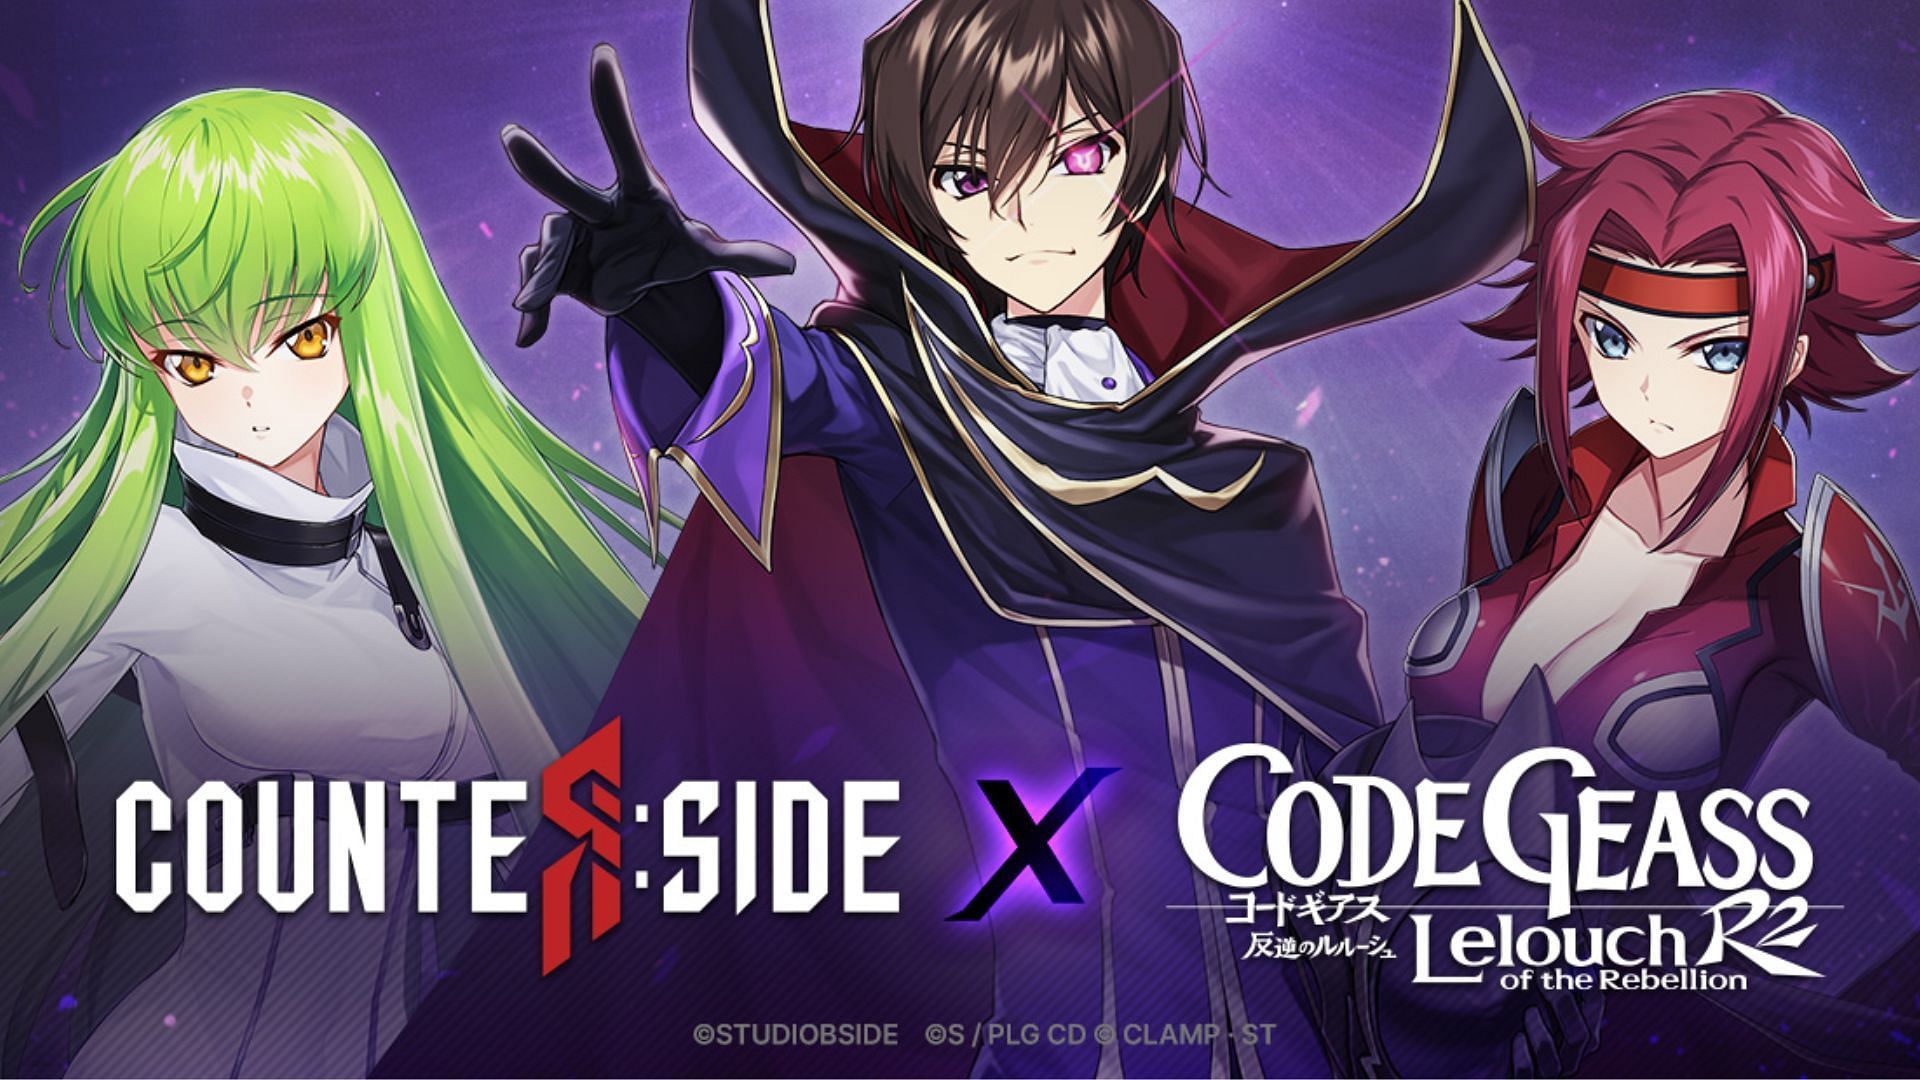 Lelouch x CC Halloween  Code geass, Anime warrior, Coding